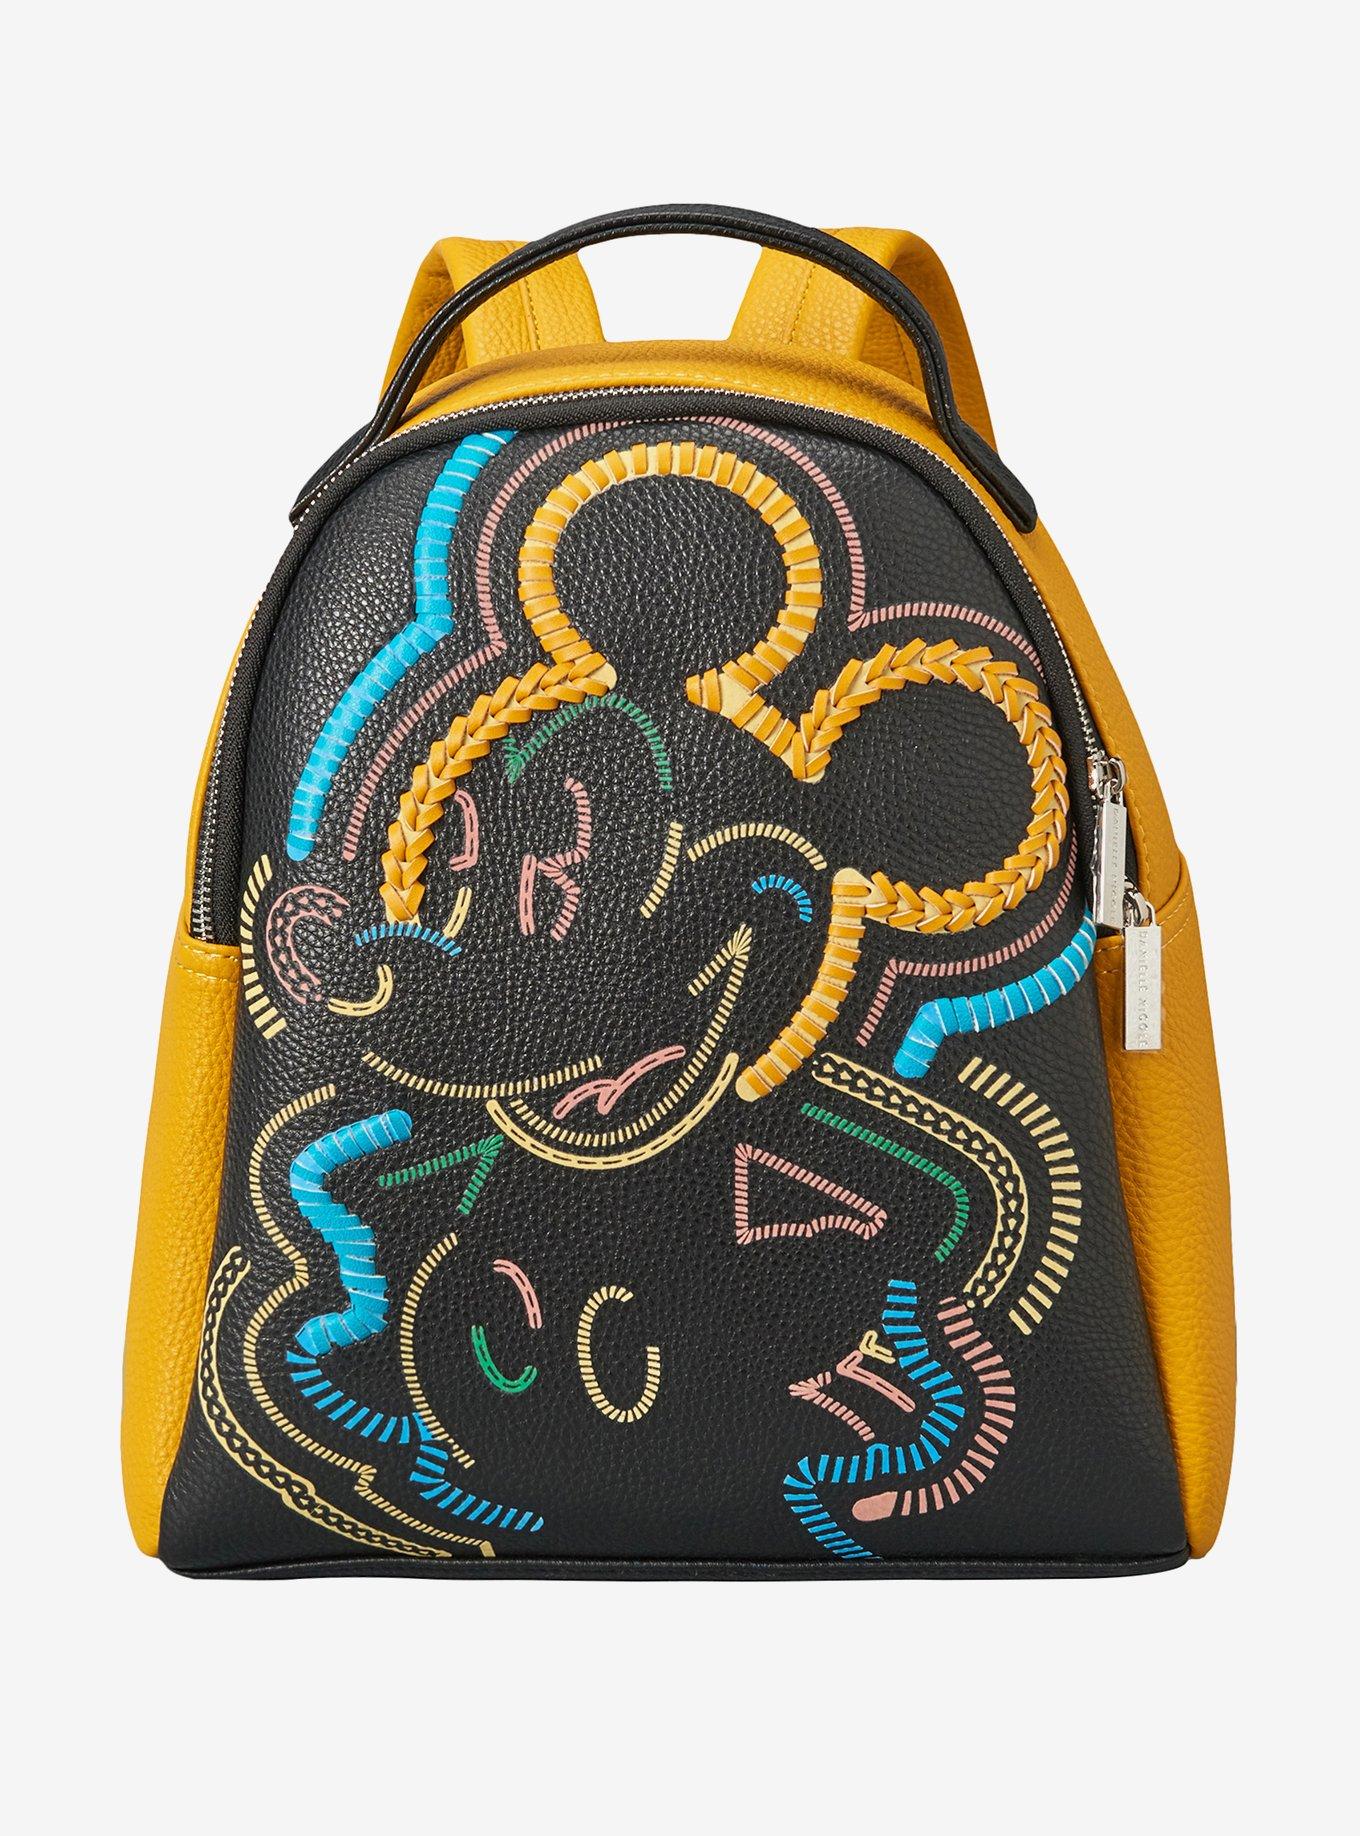 Danielle Nicole Disney Mickey Mouse Retro Multicolored Whipstitch Mini Backpack, , hi-res